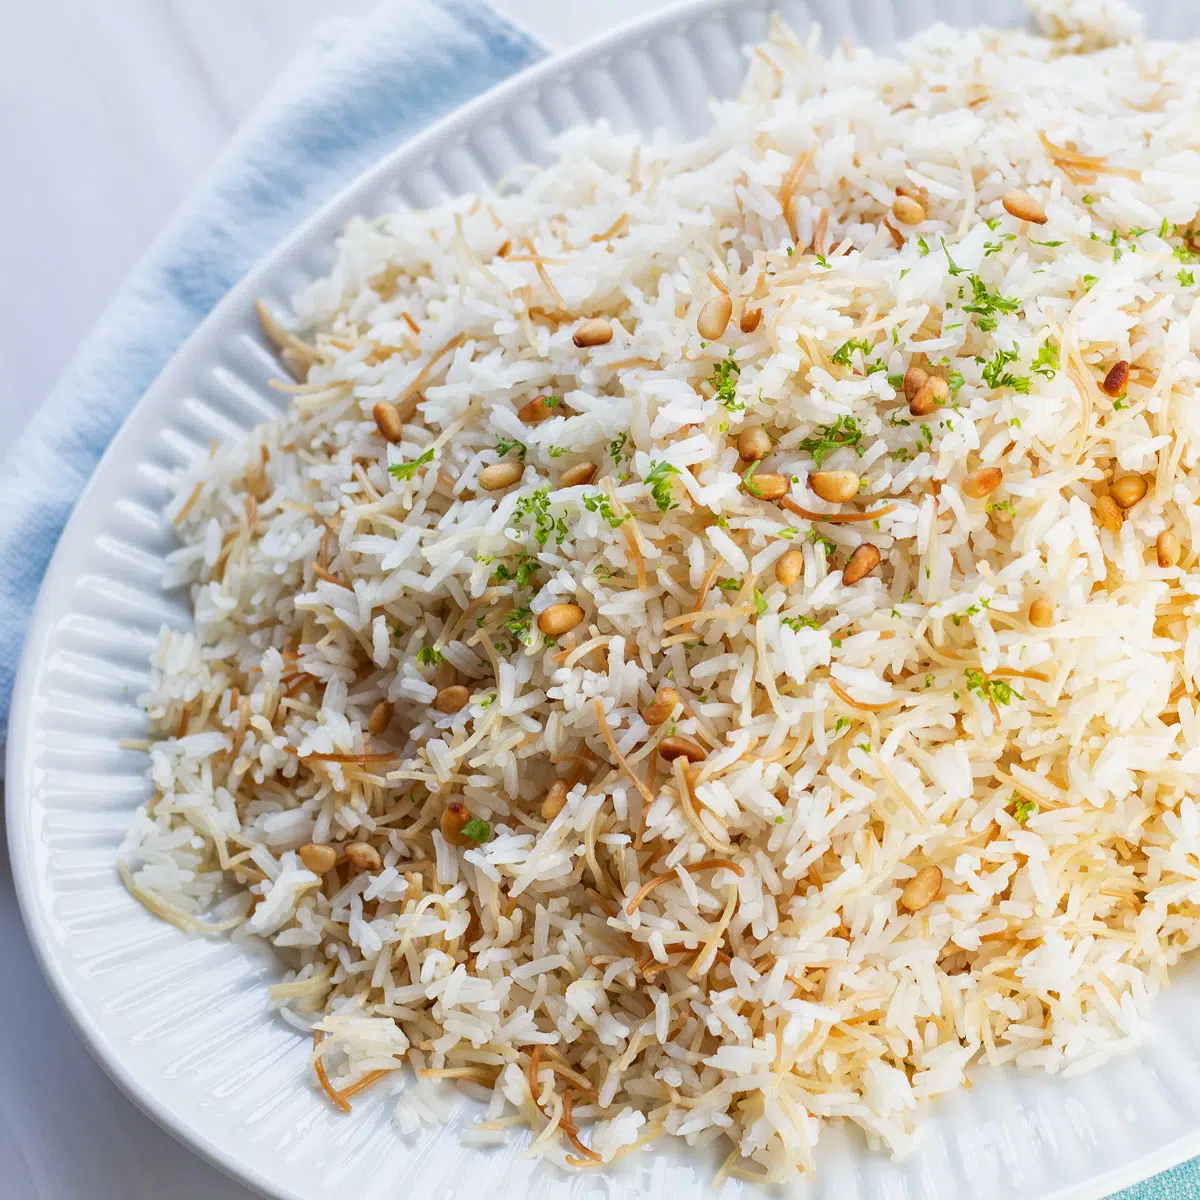 Prekrasna i mirisna vermicelli riža poslužena na velikom bijelom tanjuru.